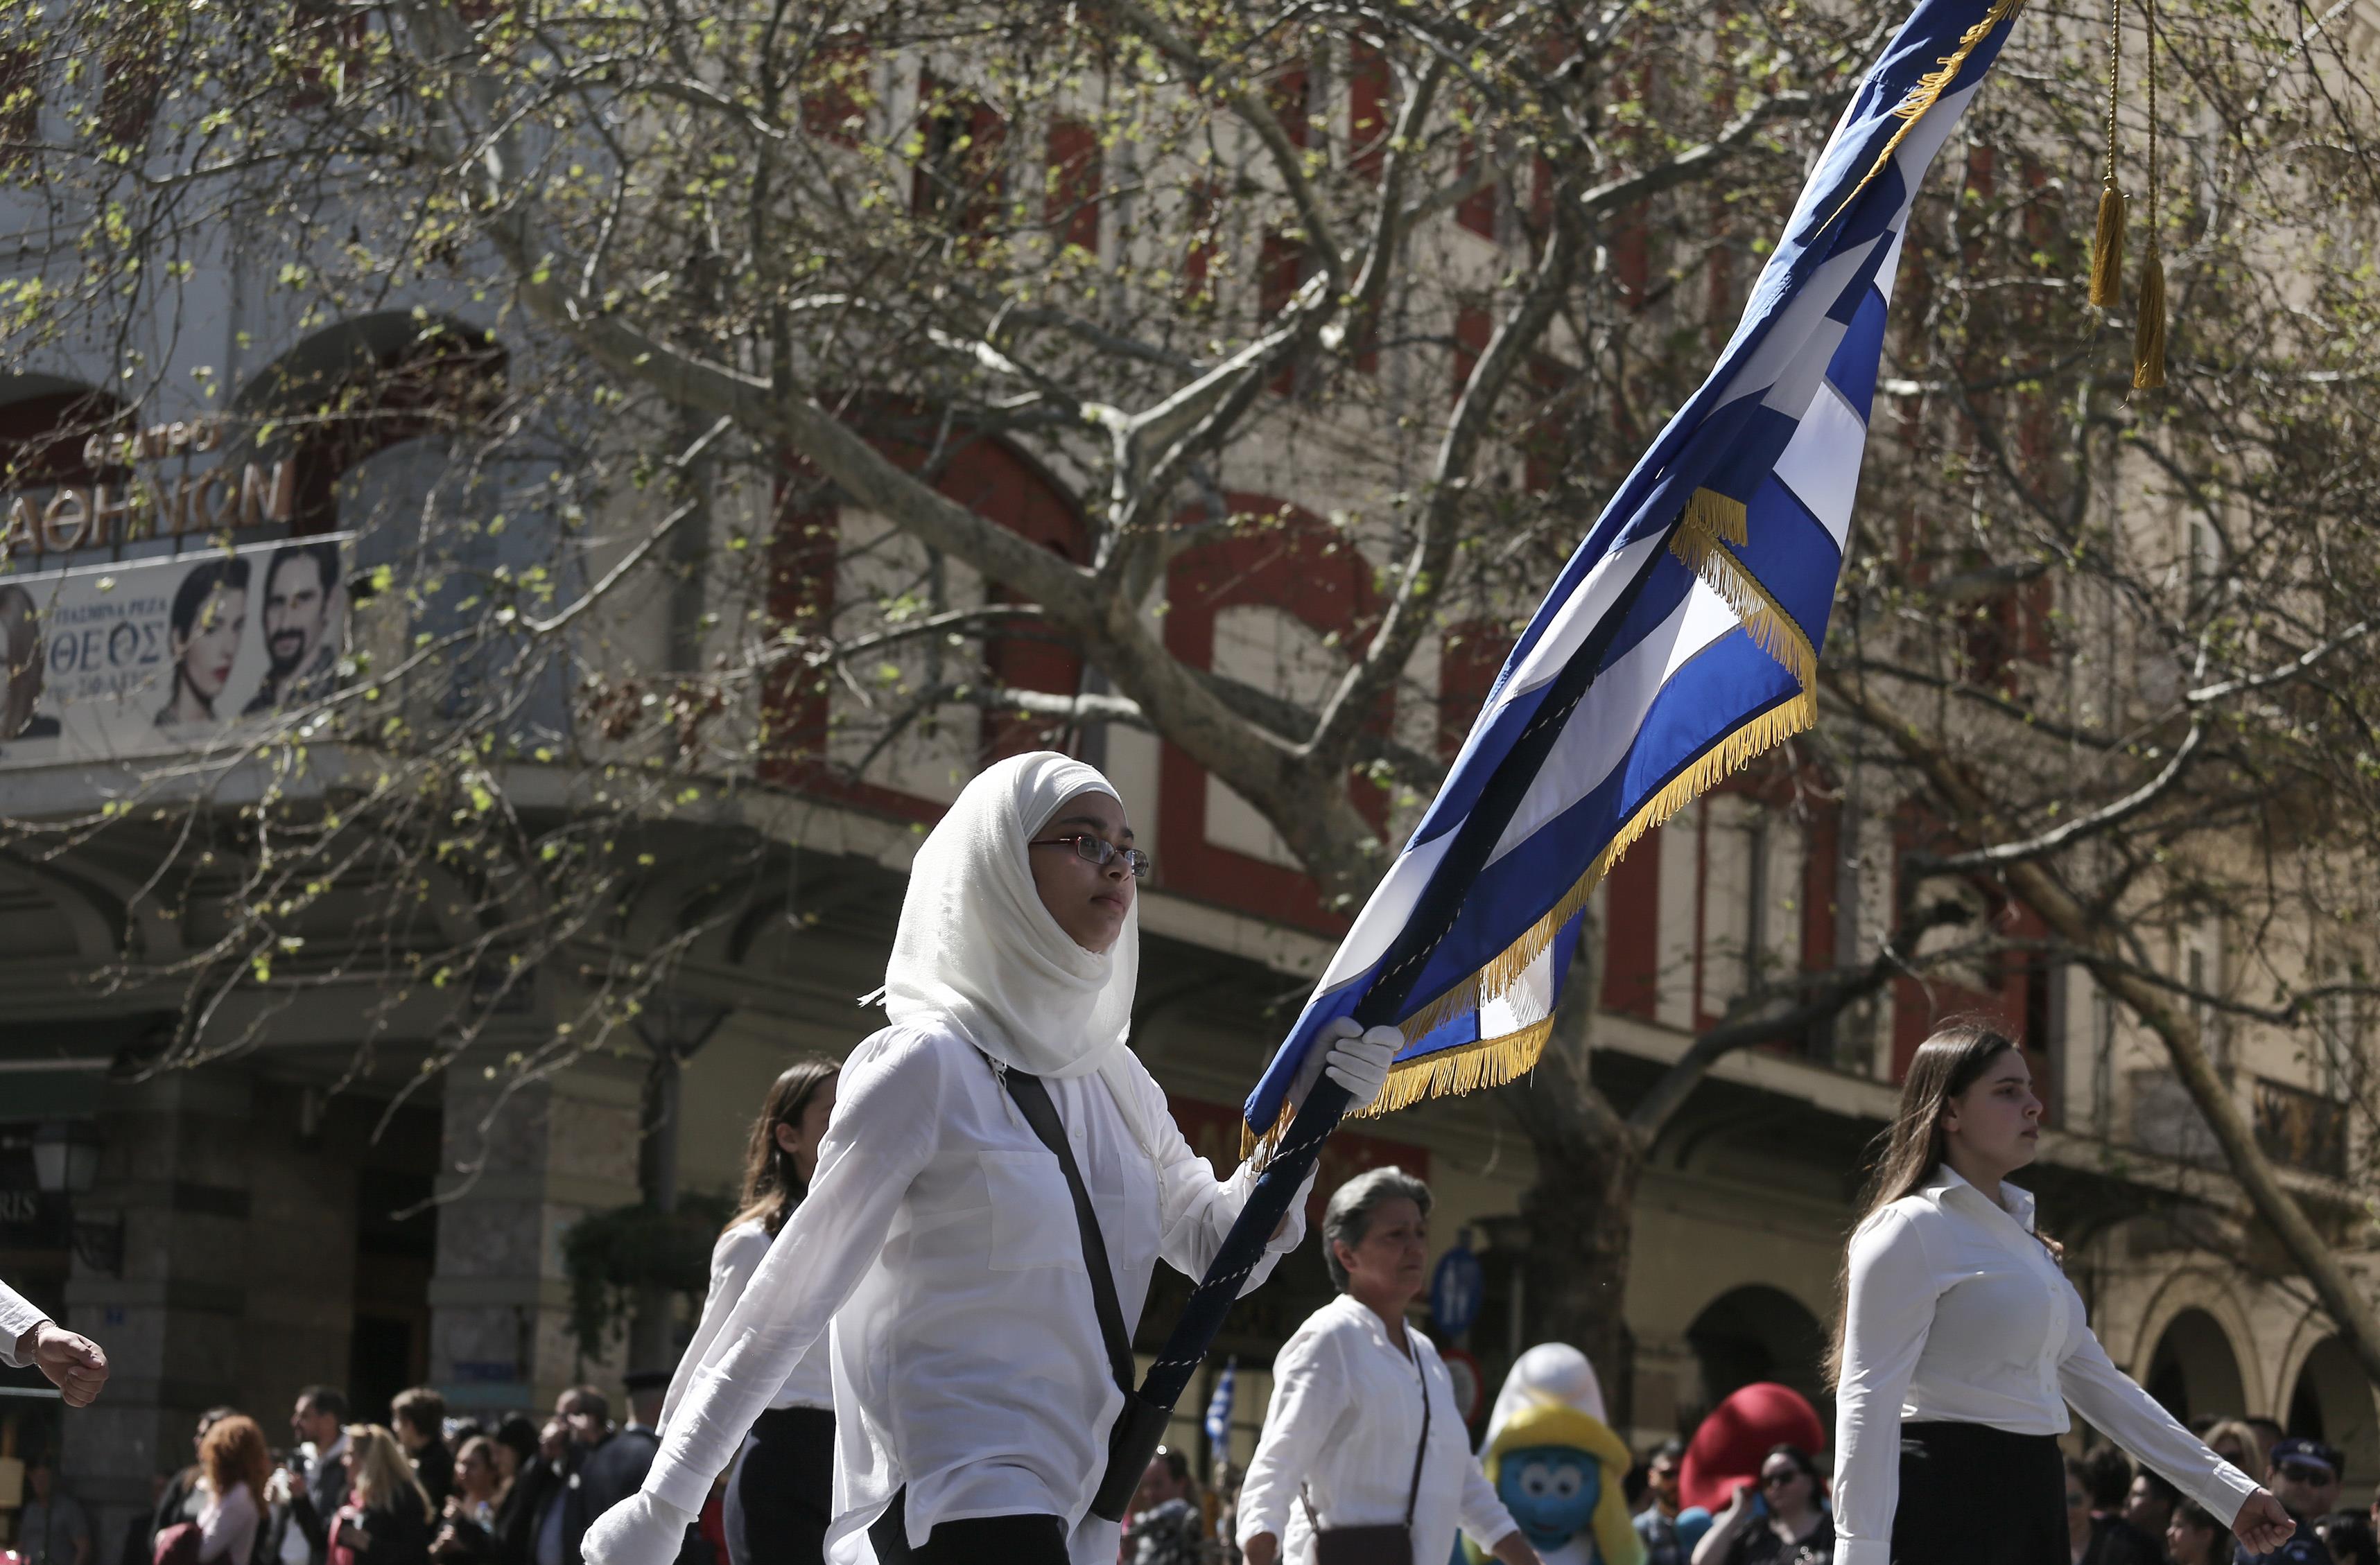 Μαθητική παρέλαση στο κέντρο της Αθήνας